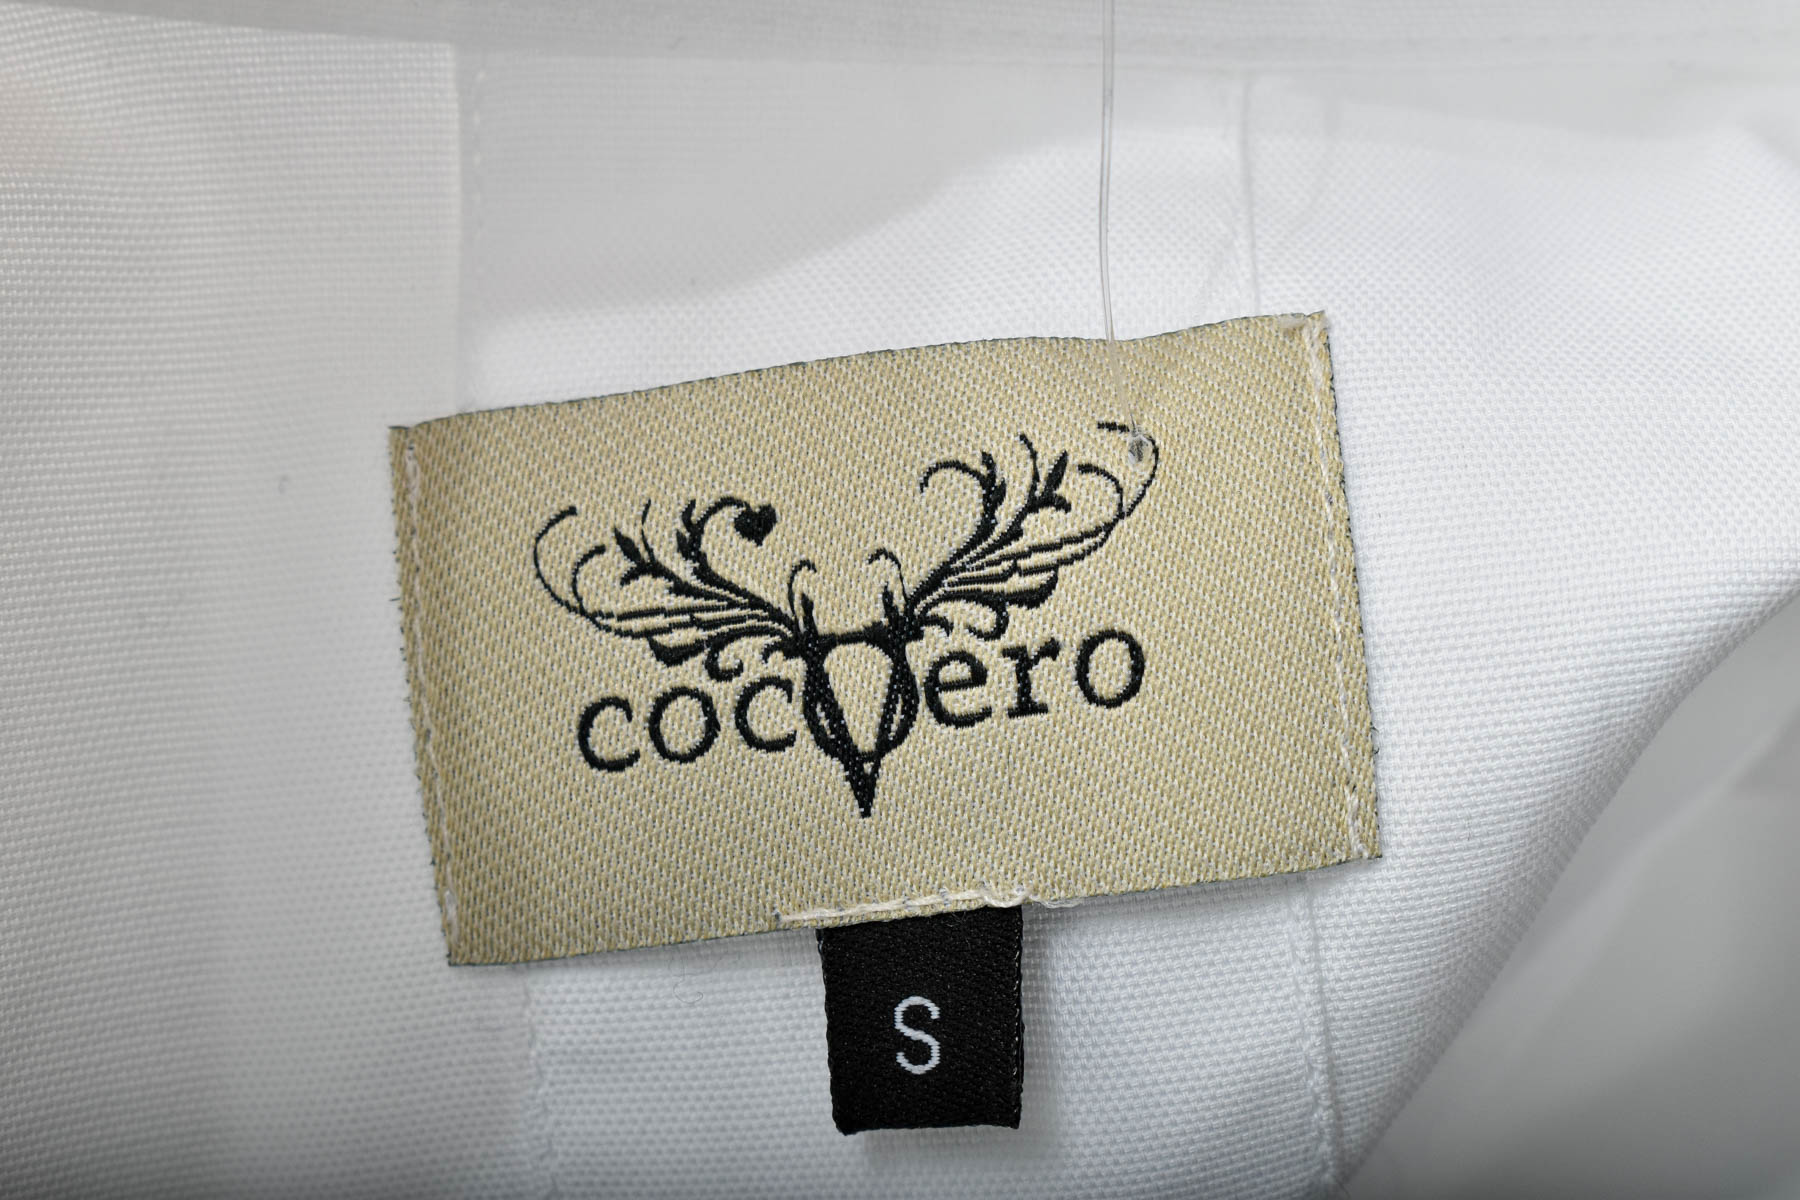 Мъжка риза - CocoVero - 2